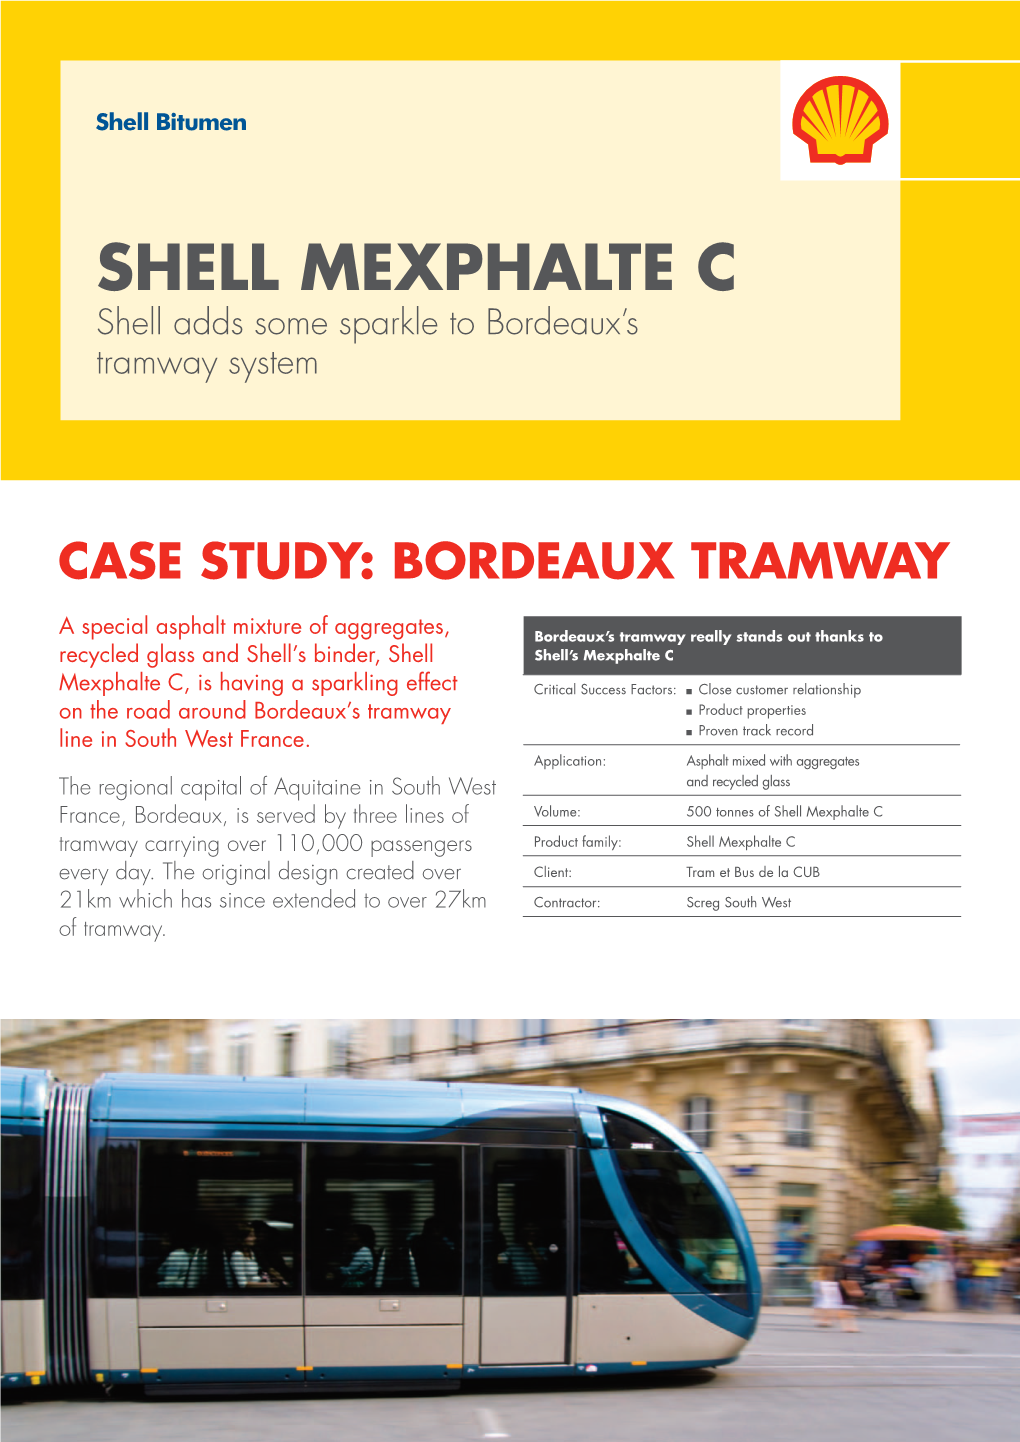 Shell Mexphalte C Road Tram Application